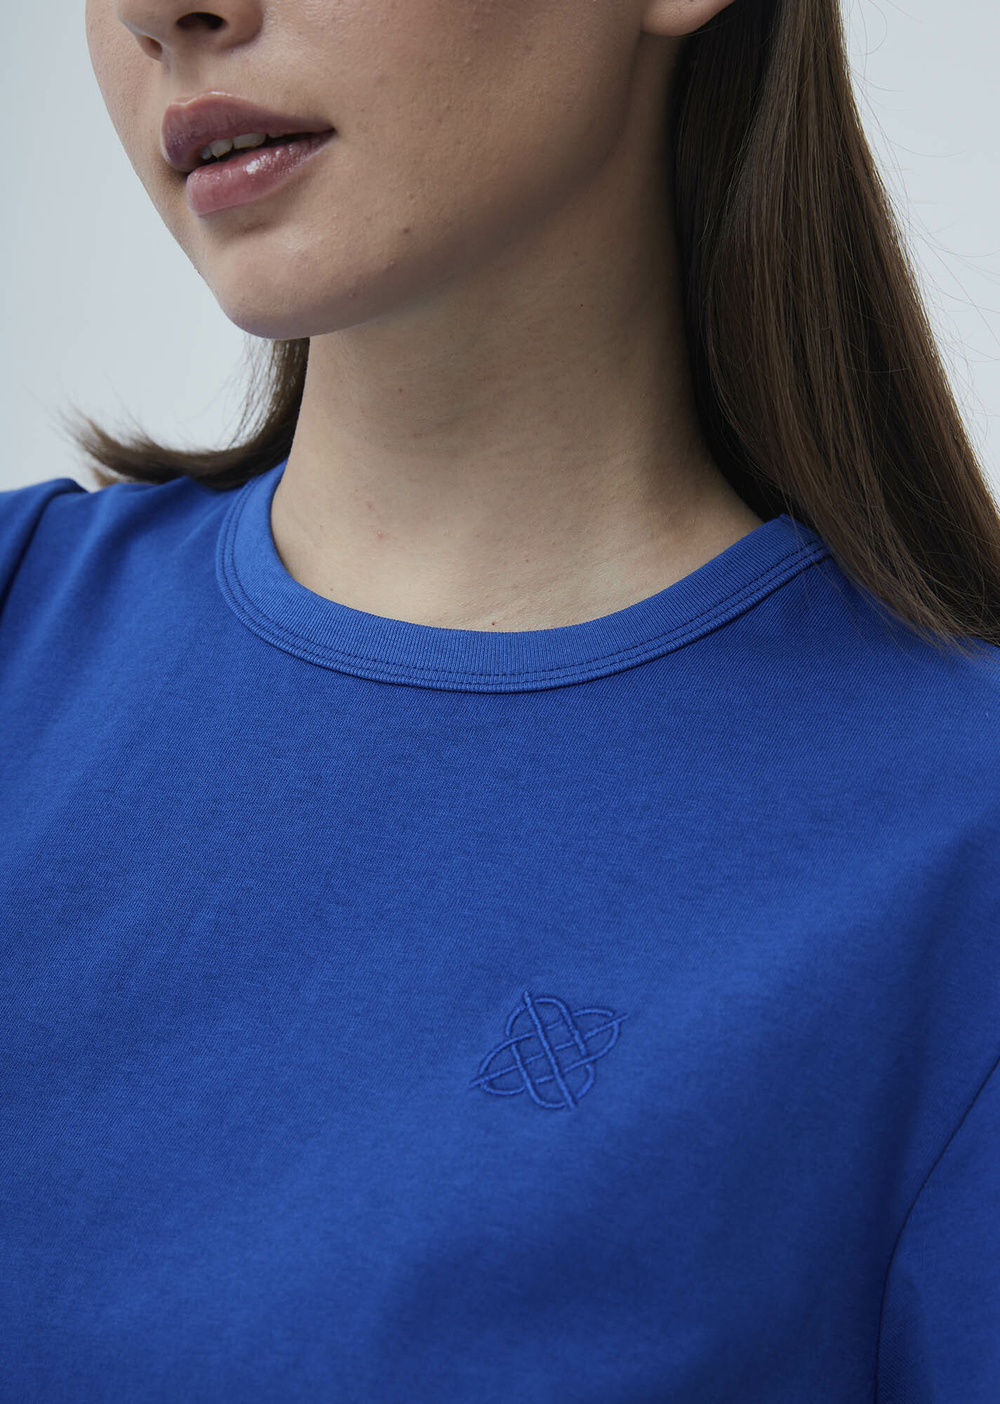 Женская футболка с вышивкой синий р.M